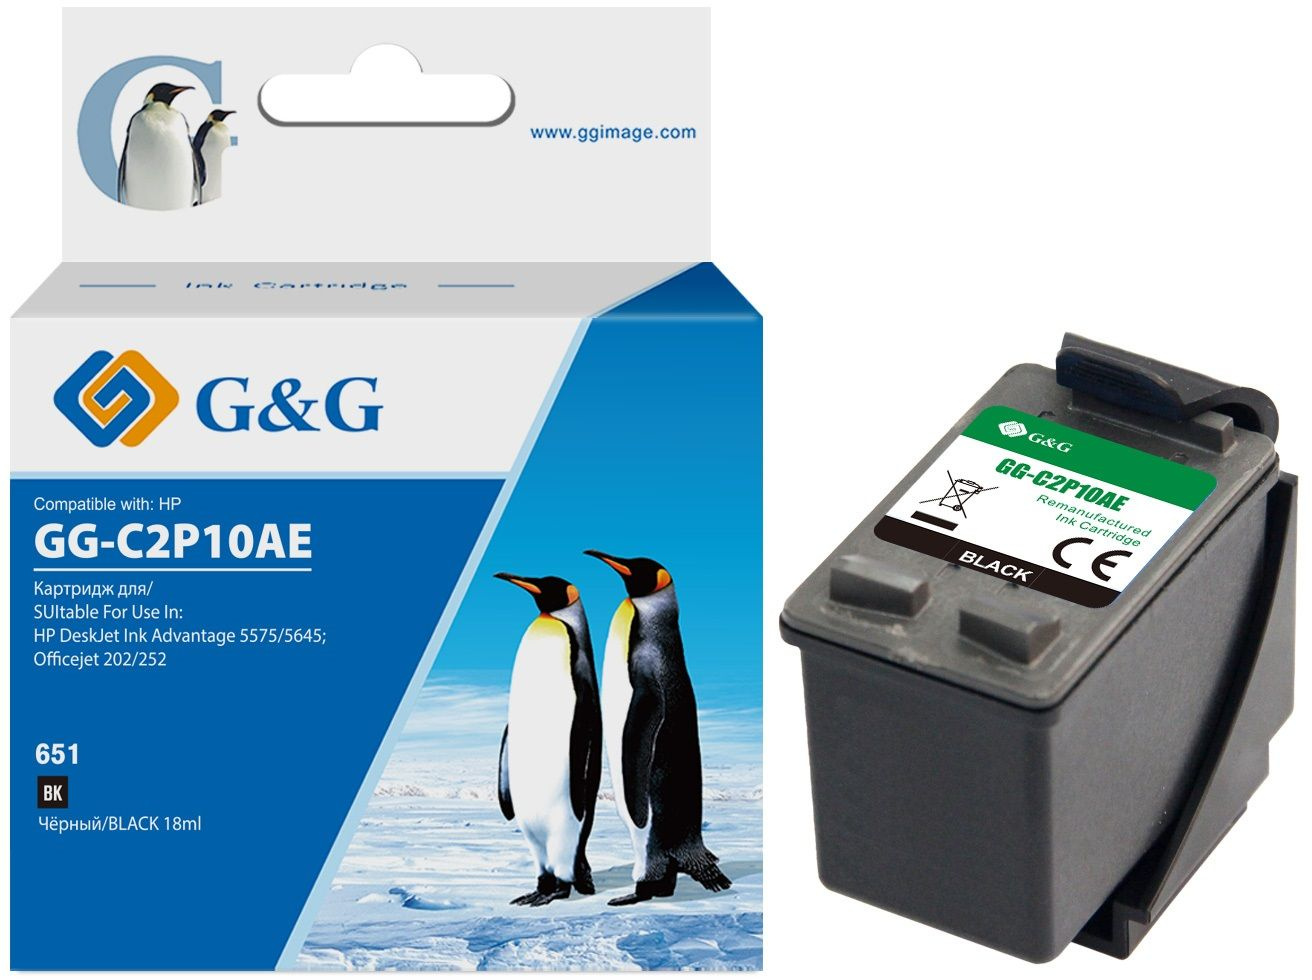  G&G GG-C2P10AE, 651,  / GG-C2P10AE